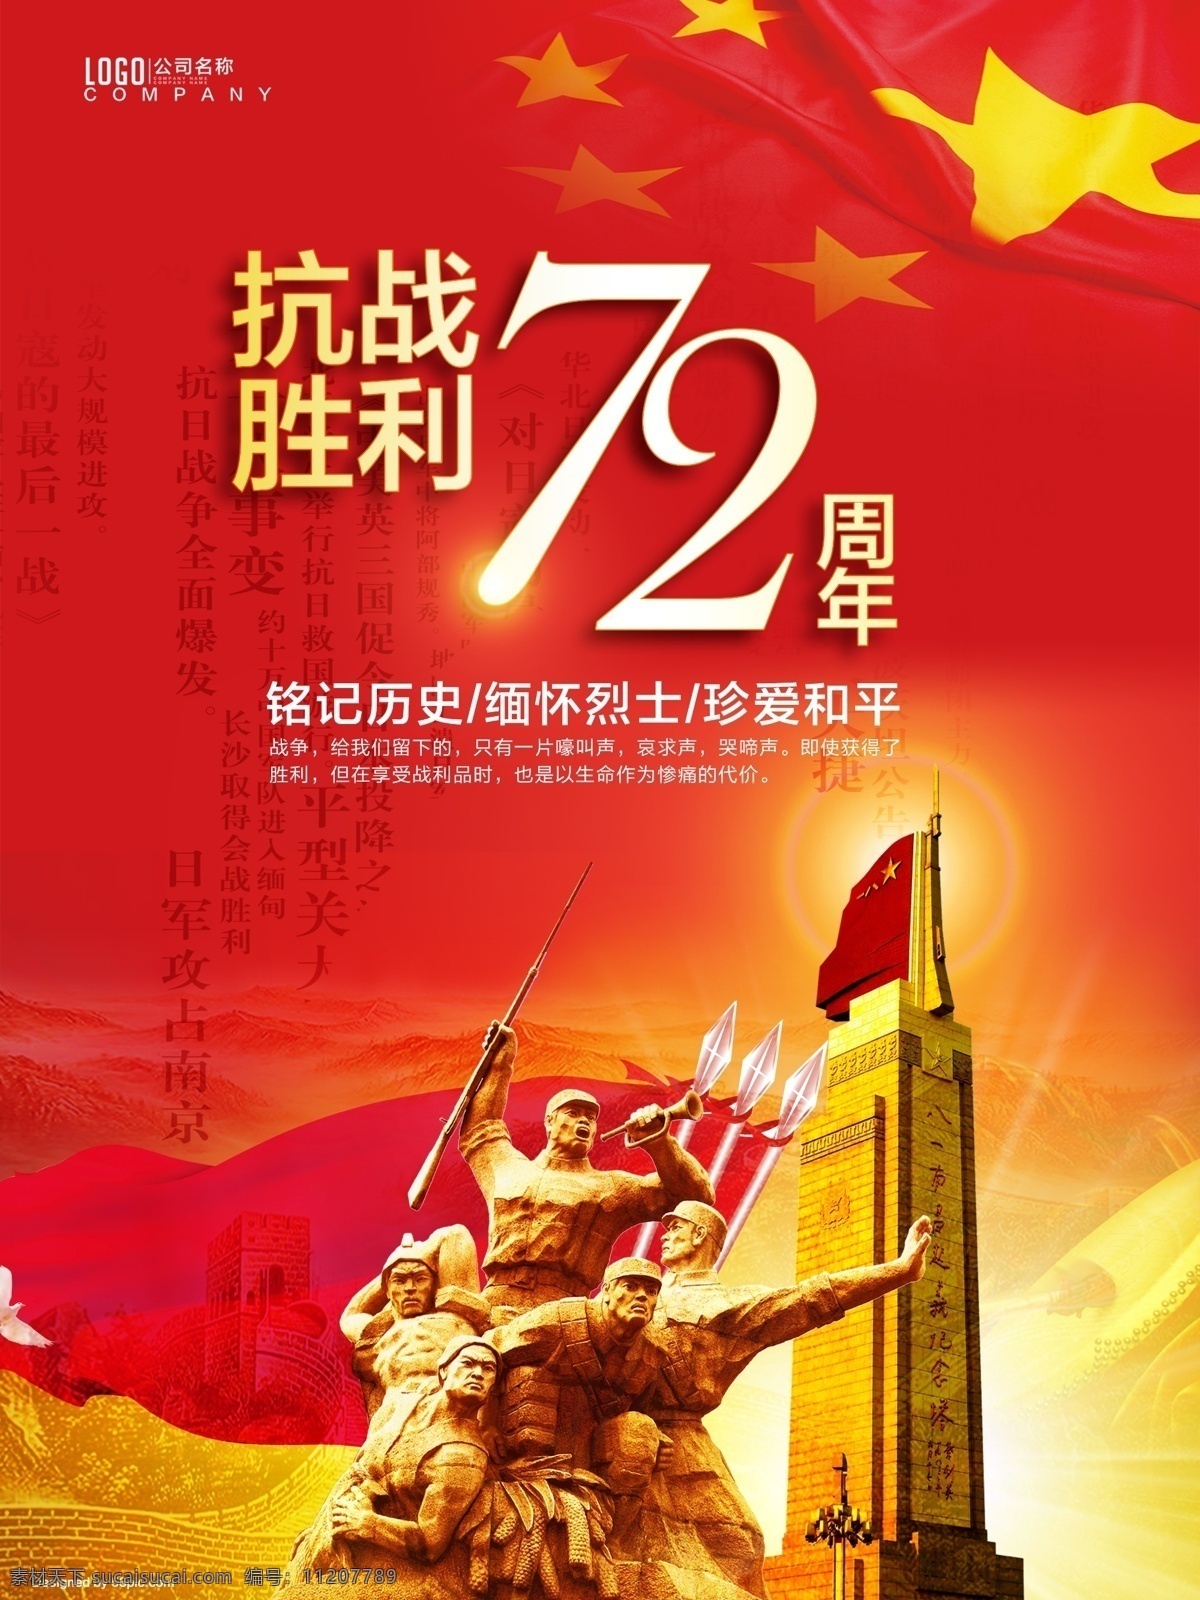 红色 大气 抗战 胜利 周年 公益 海报 红色大气 抗战胜利 72周年 公益海报 战争 红旗 国旗 和平 雕塑